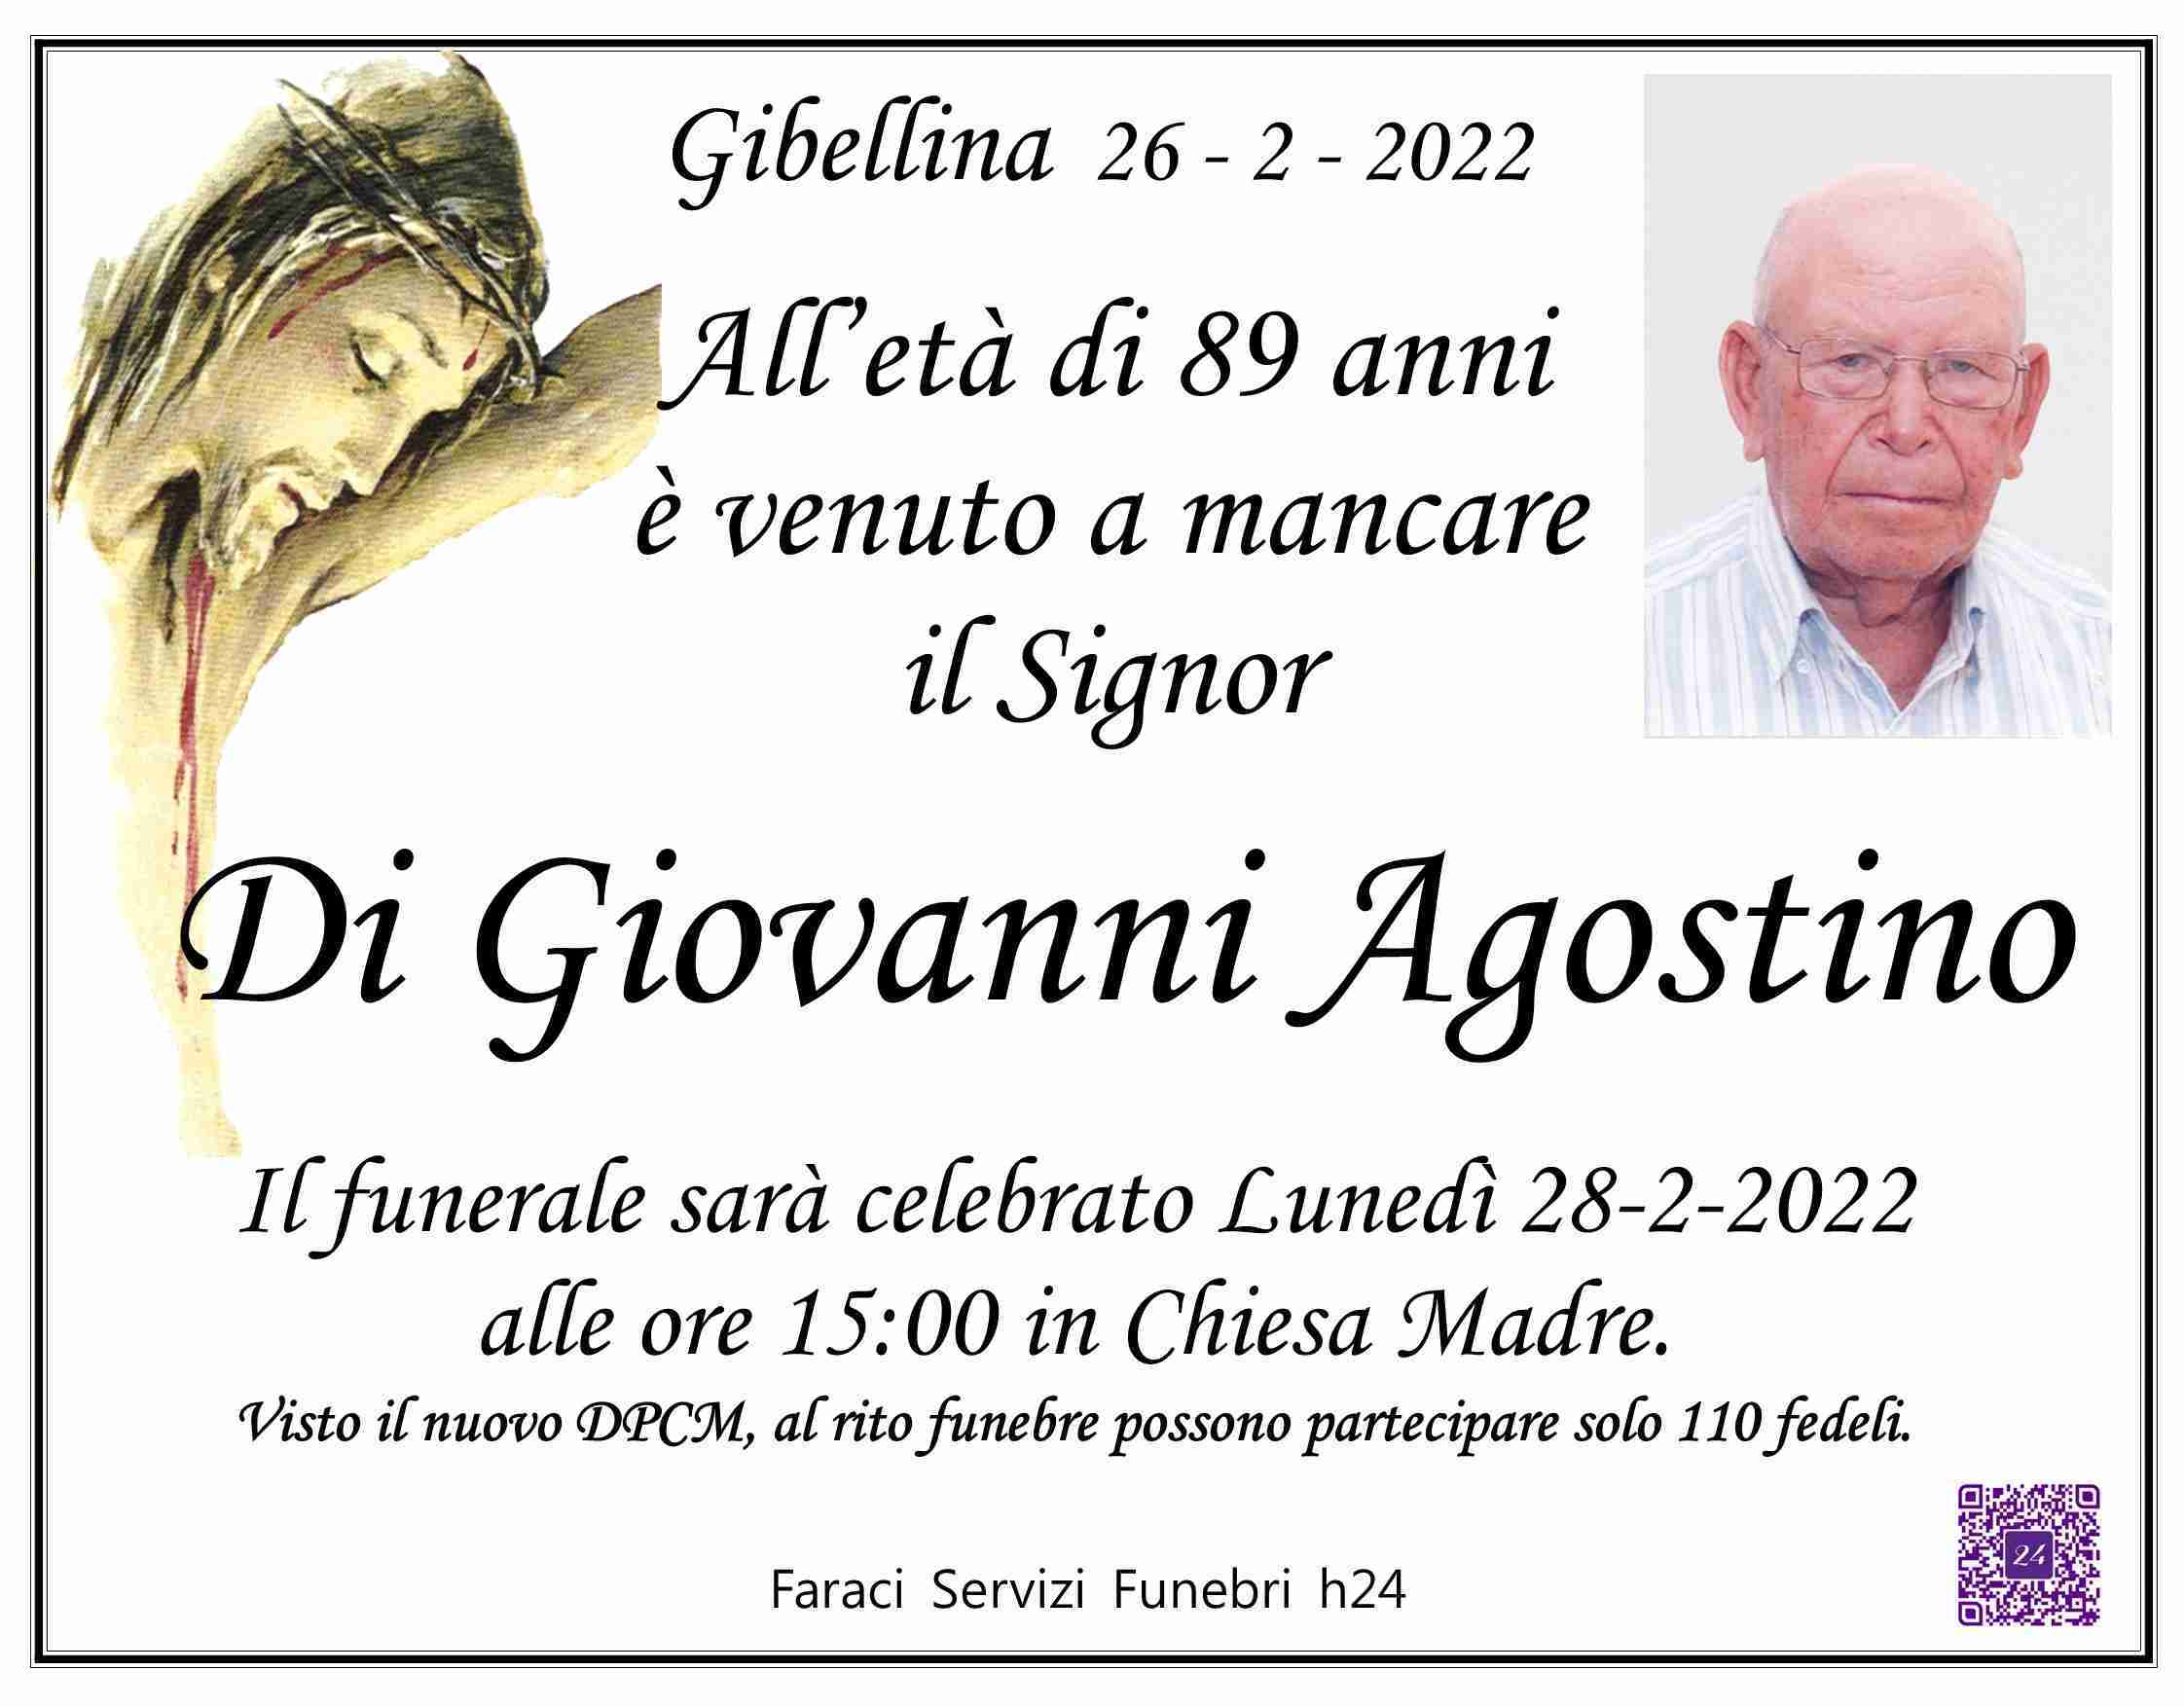 Agostino Di Giovanni